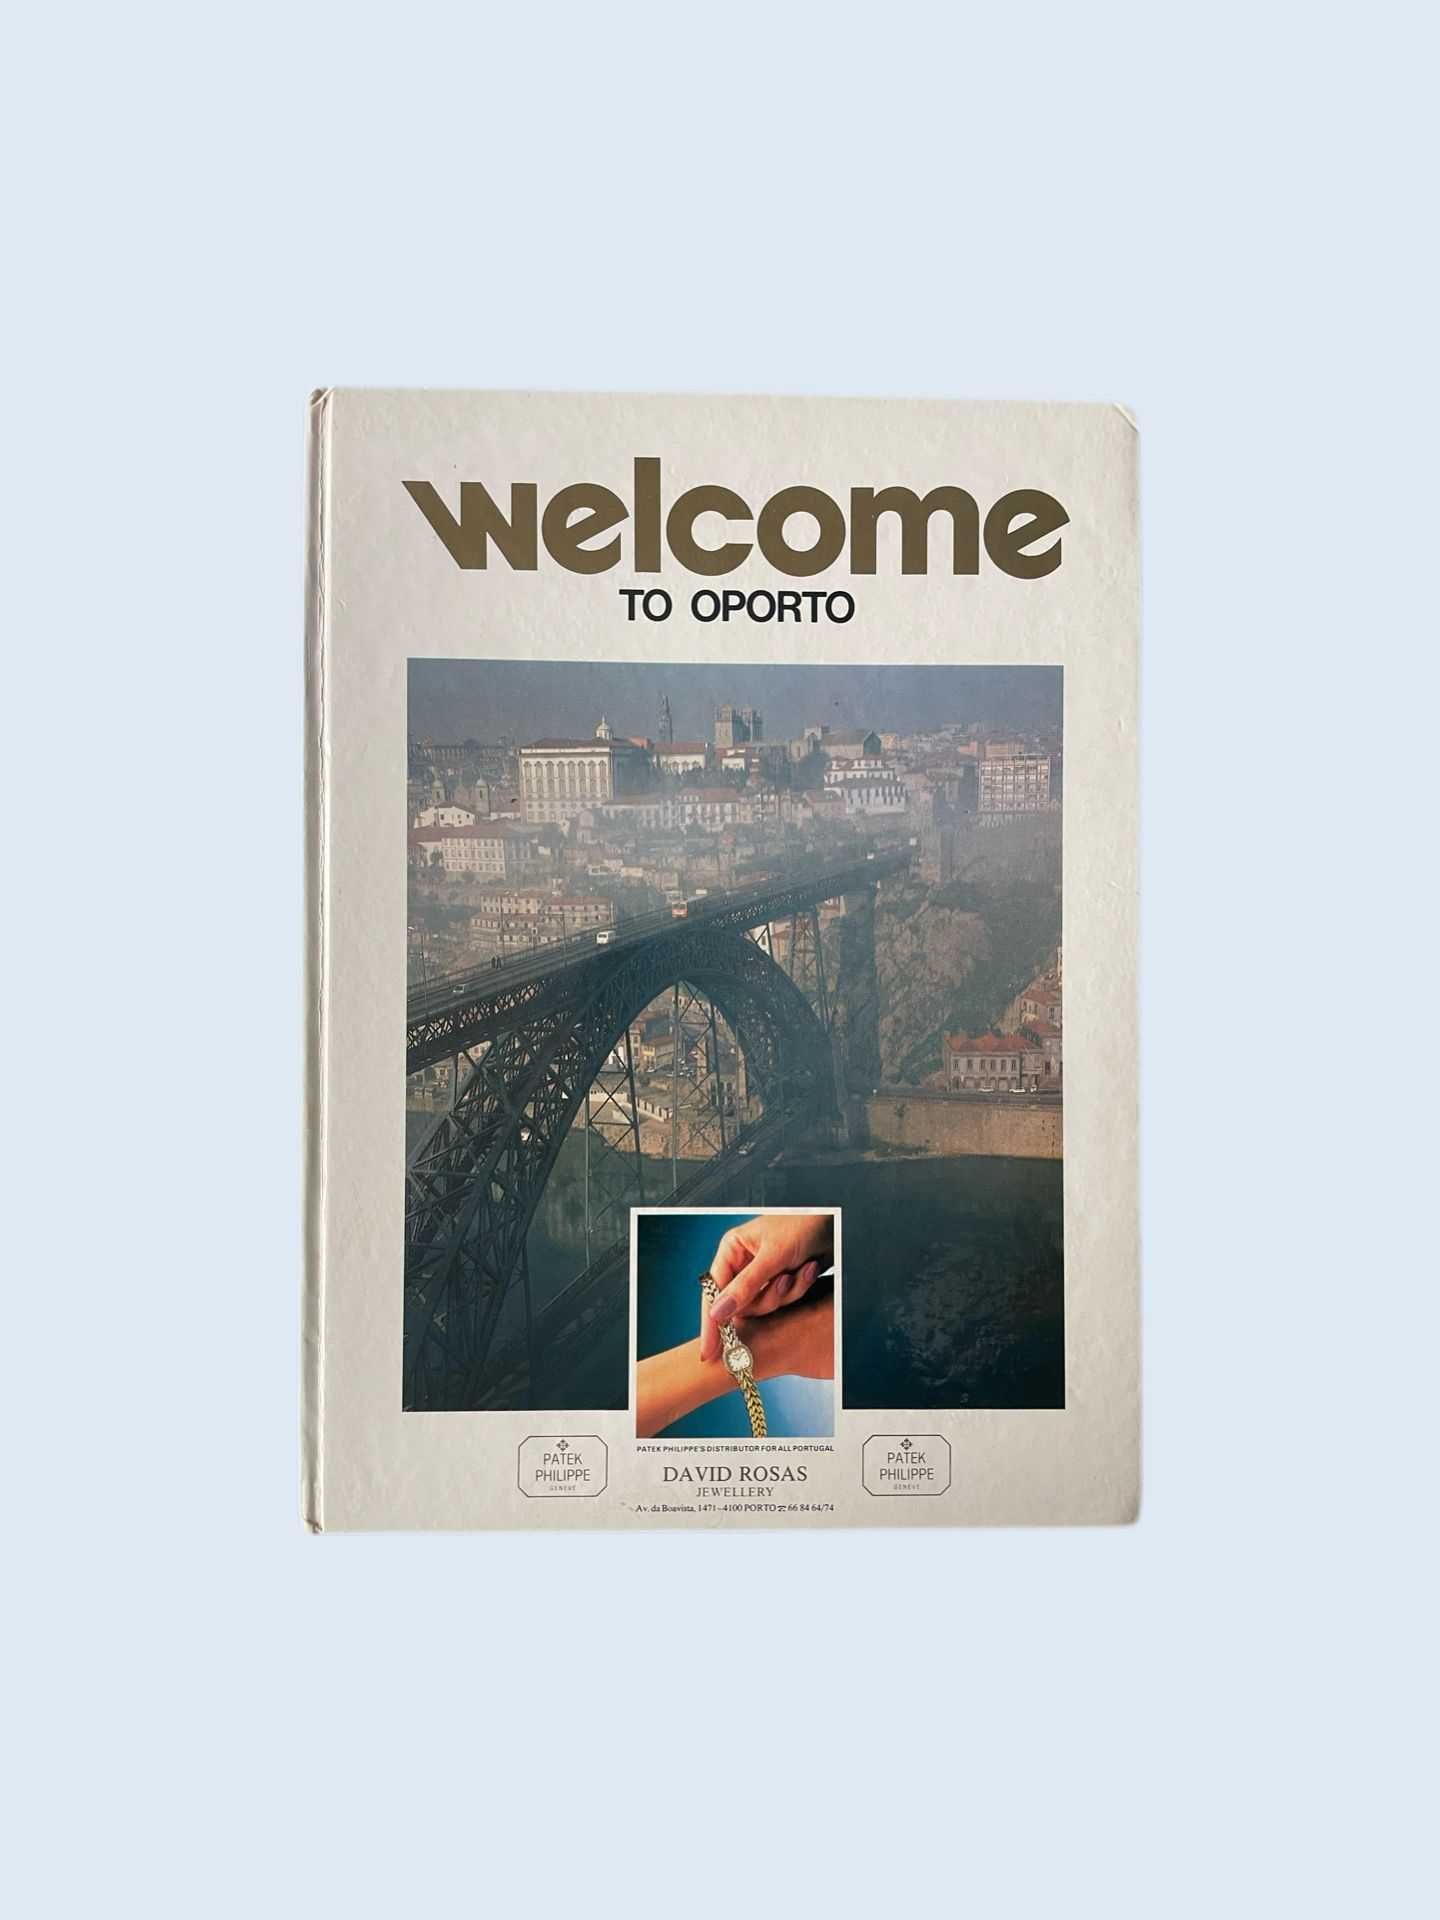 Livro “Goldenbook Welcome to Oporto” 1991